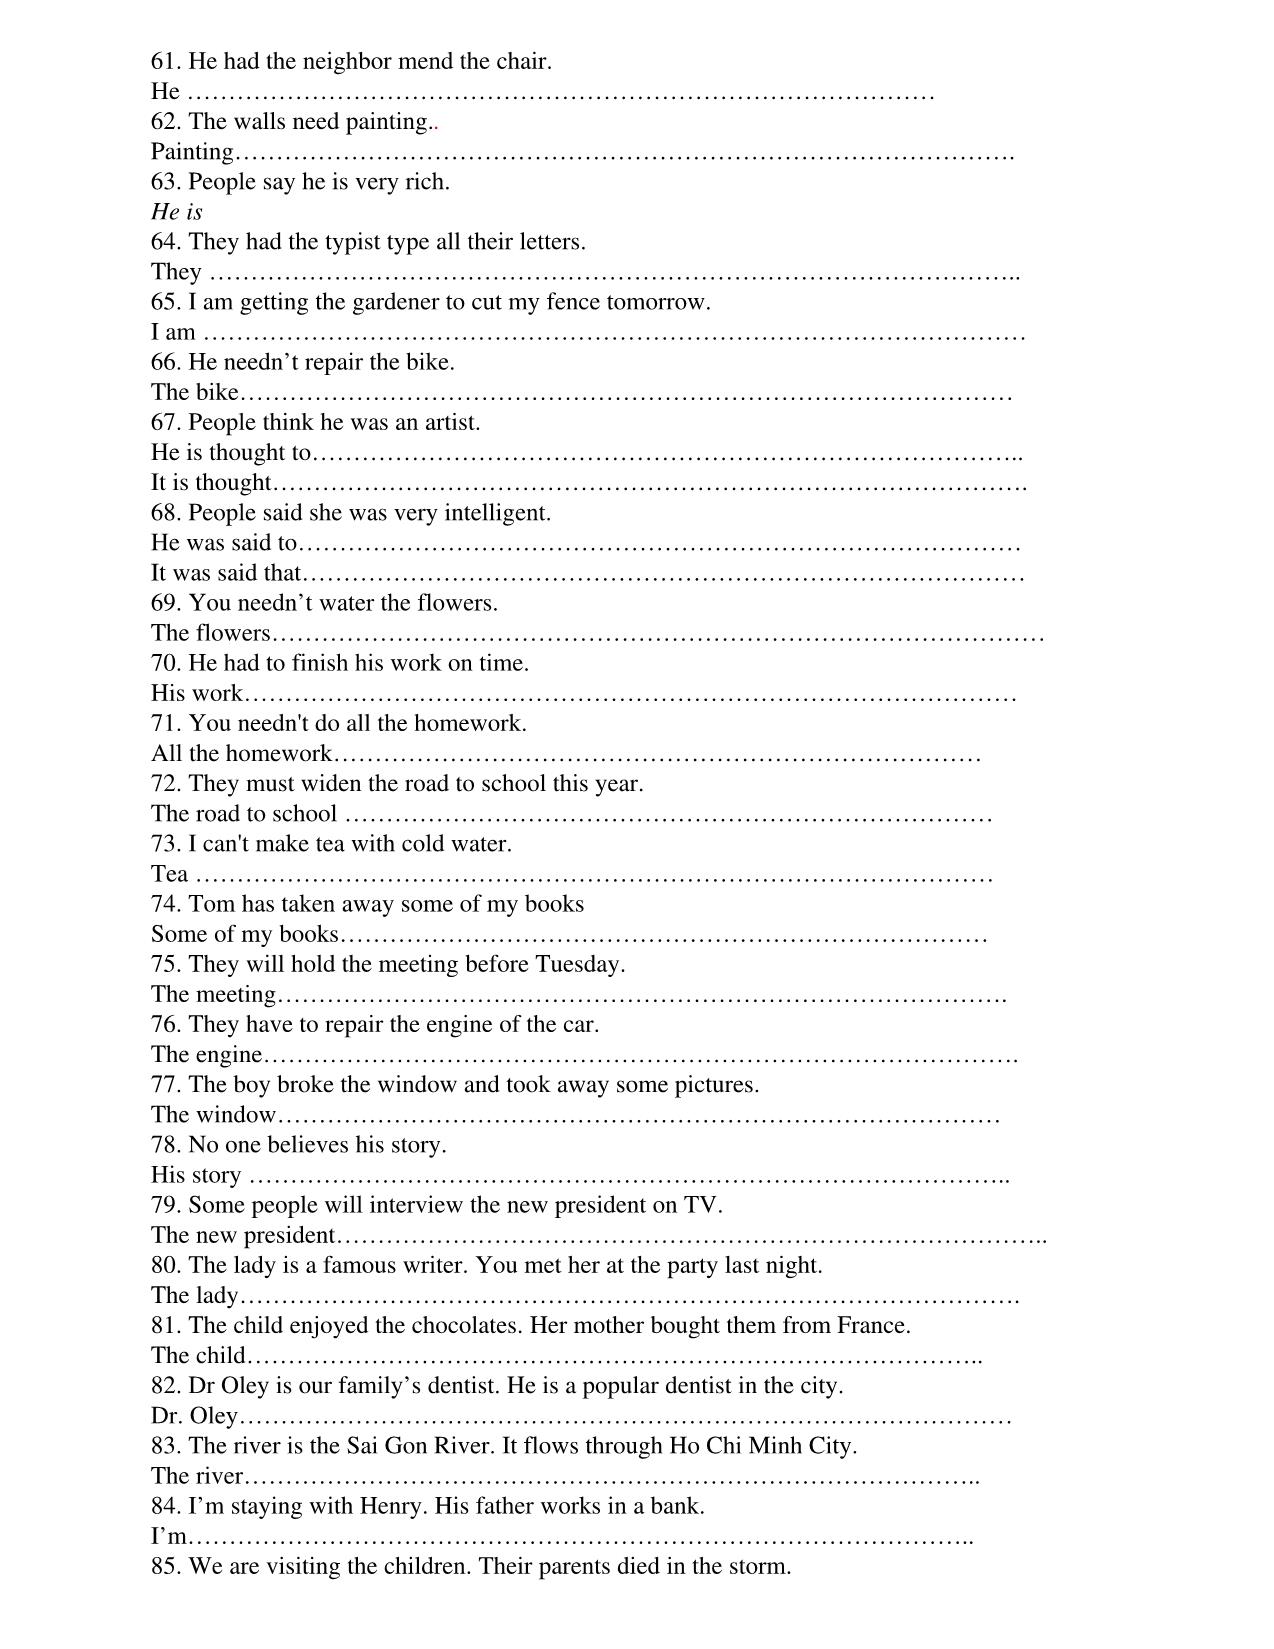 Bài tập tự luận tiếng Anh Lớp 12 - Học kì 1 trang 3